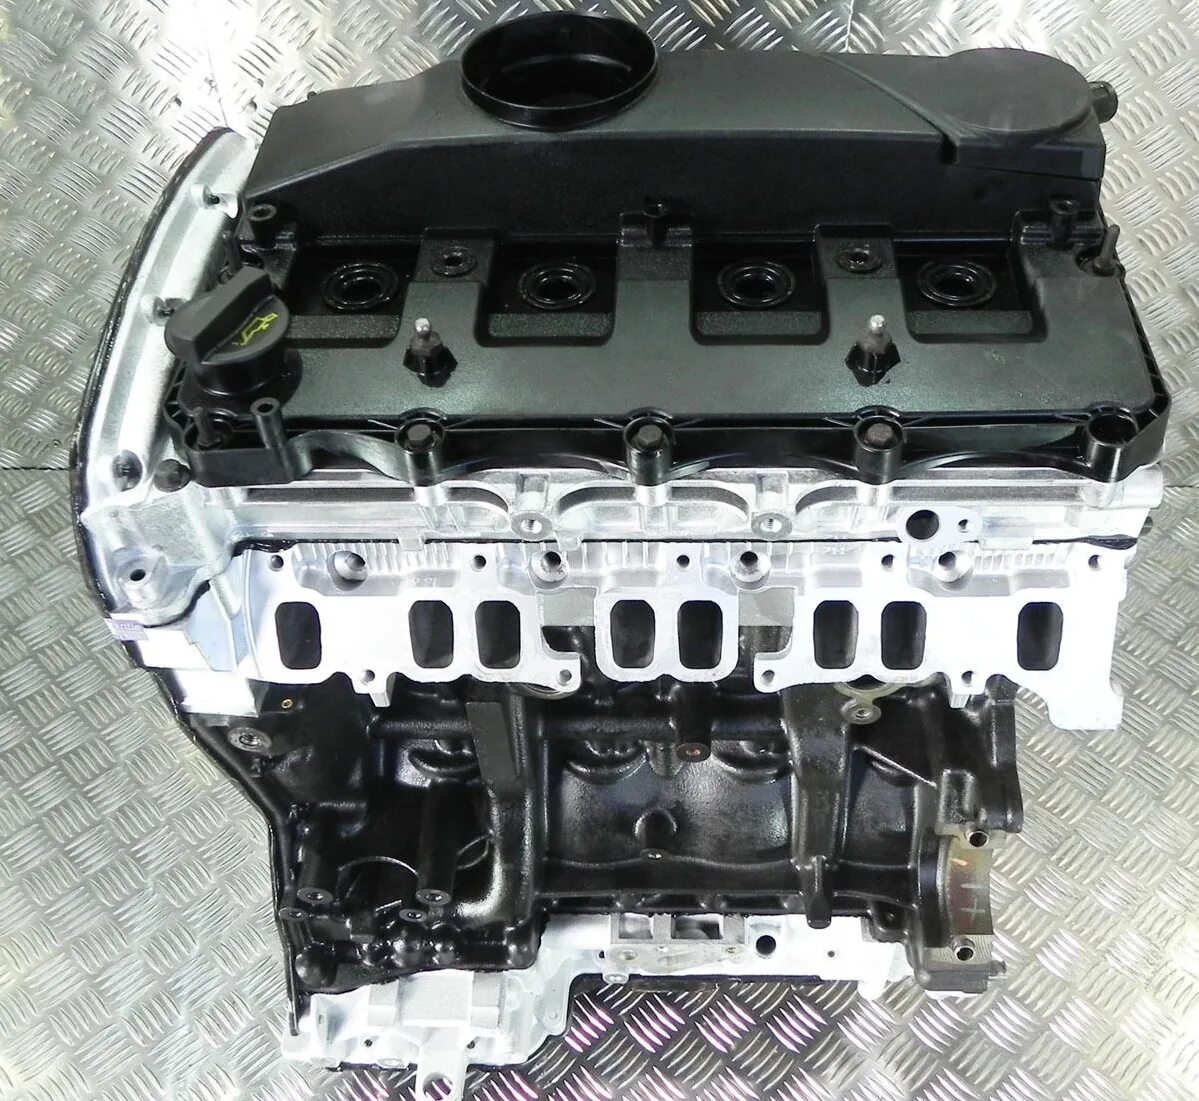 Новый двигатель транзит. Форд Транзит 2006-2014 двигатель 2.2. P22dte. PGFA 2.2. 2.2 TDCI.